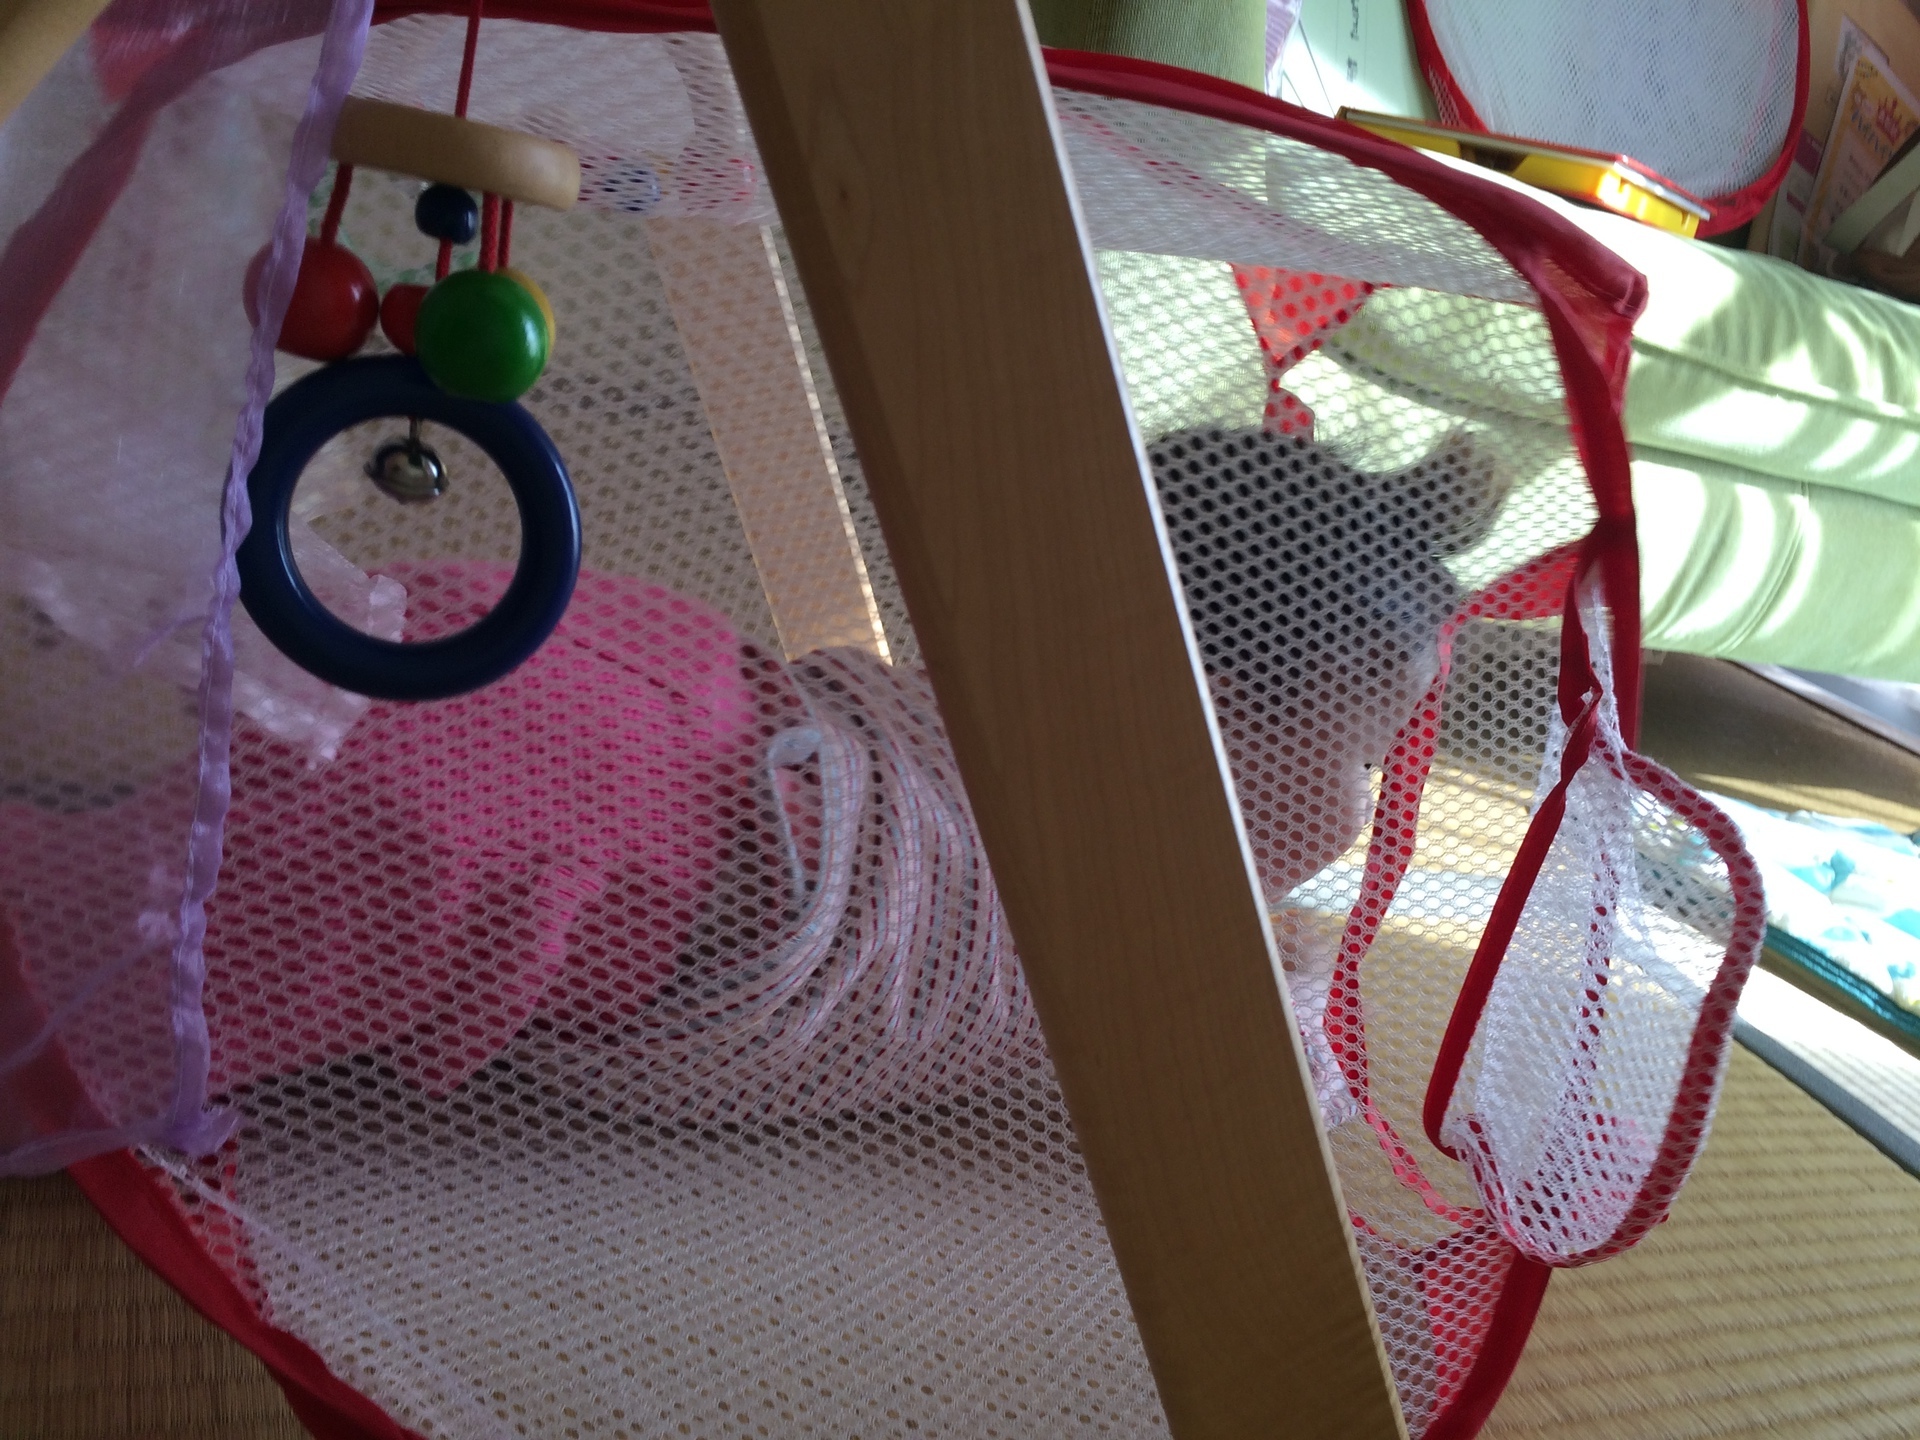 9か月 トンネル 全力で初めての子育て 手作りおもちゃにイベントにー In神戸